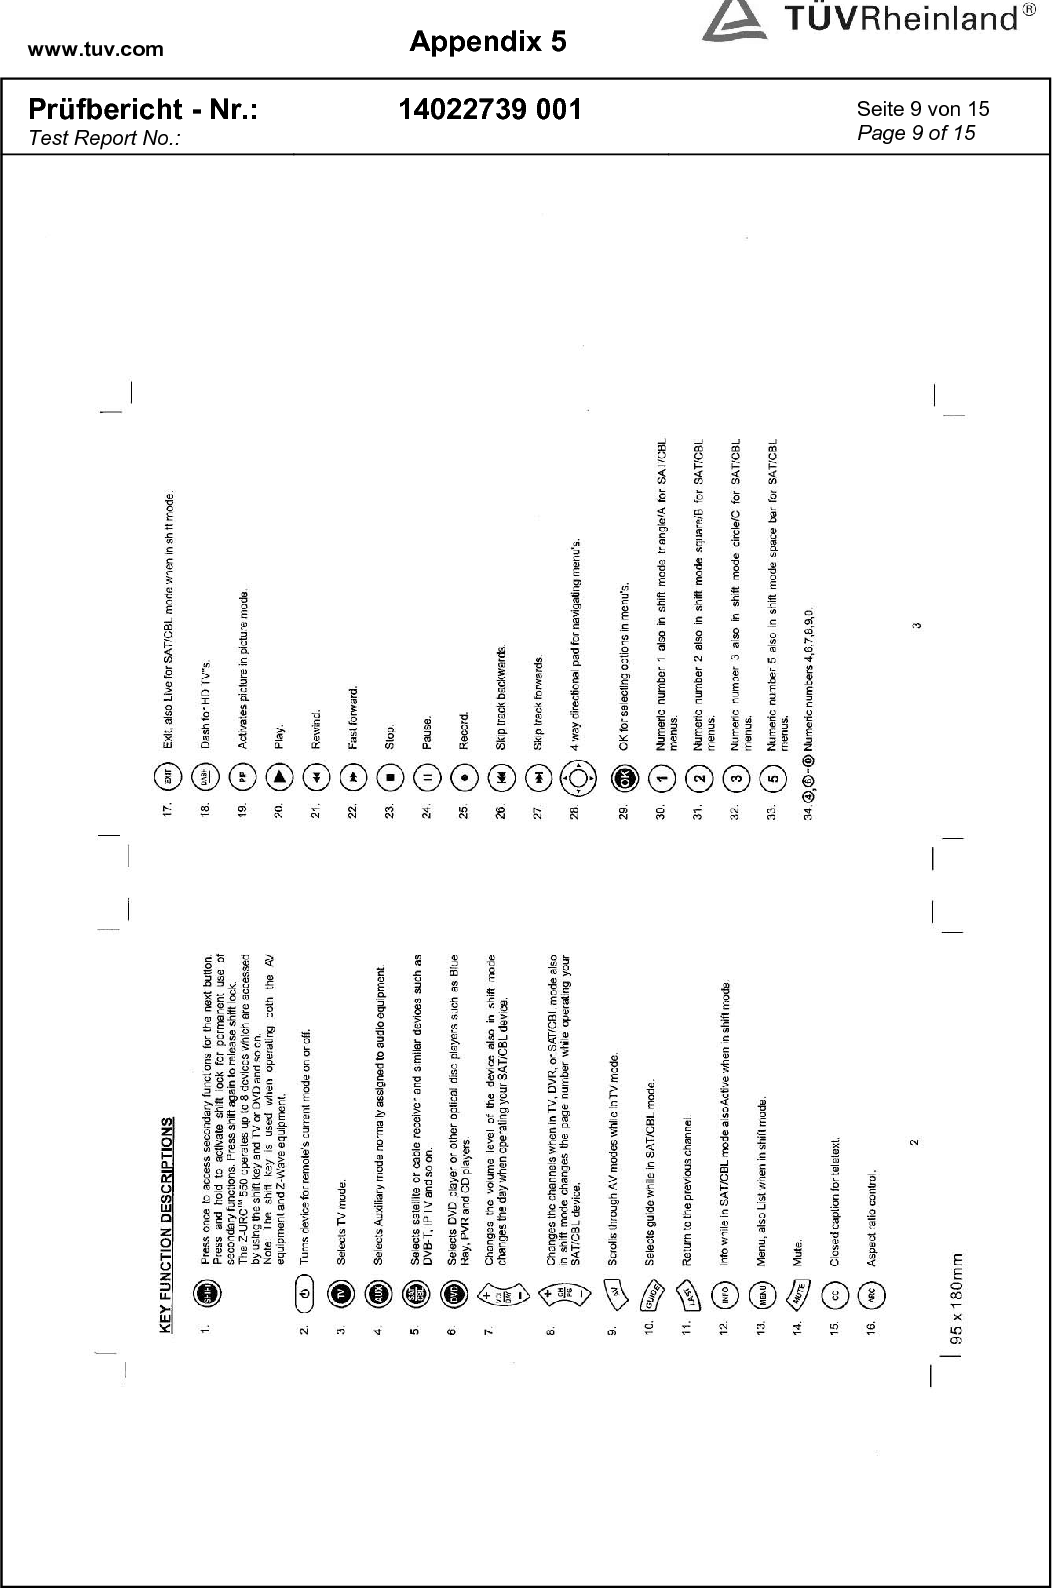 www.tuv.com  Appendix 5  Prüfbericht - Nr.: Test Report No.: 14022739 001  Seite 9 von 15 Page 9 of 15   